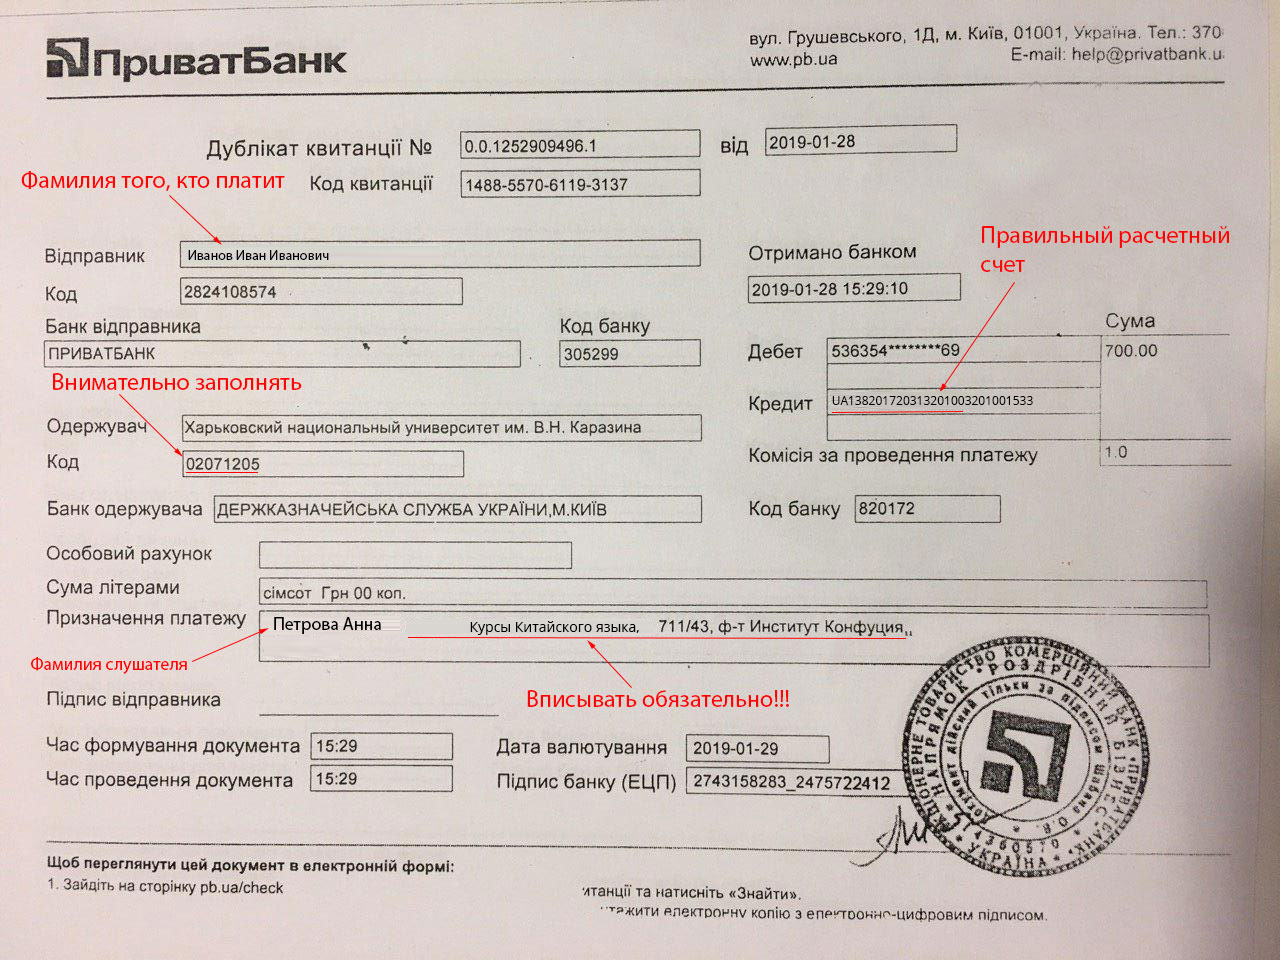 Код банка казахстана. Национальный код банка что это. Национальный код Китая для банка. М банк код. Национальный код банка Беларусь.